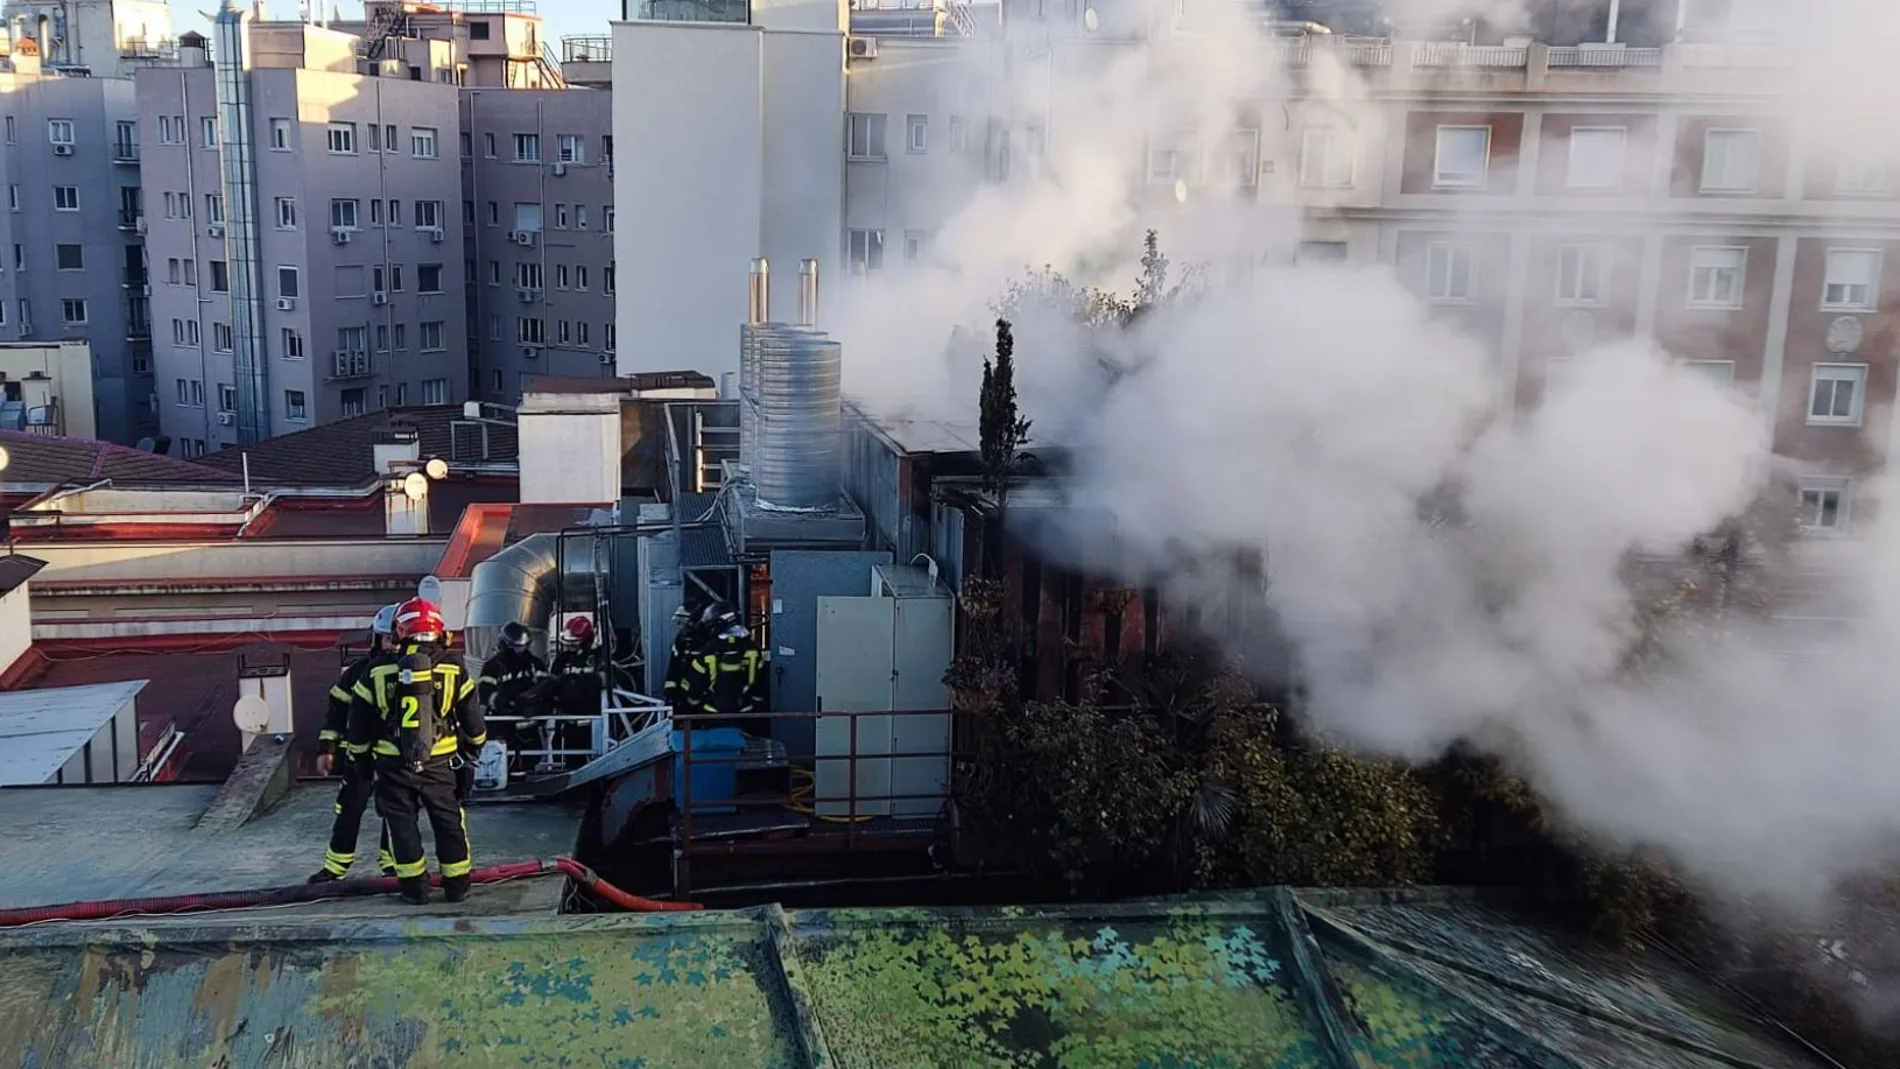 Aparatoso incendio en un hotel de Madrid: arde un cuarto de instalaciones de la azotea pero sin heridos